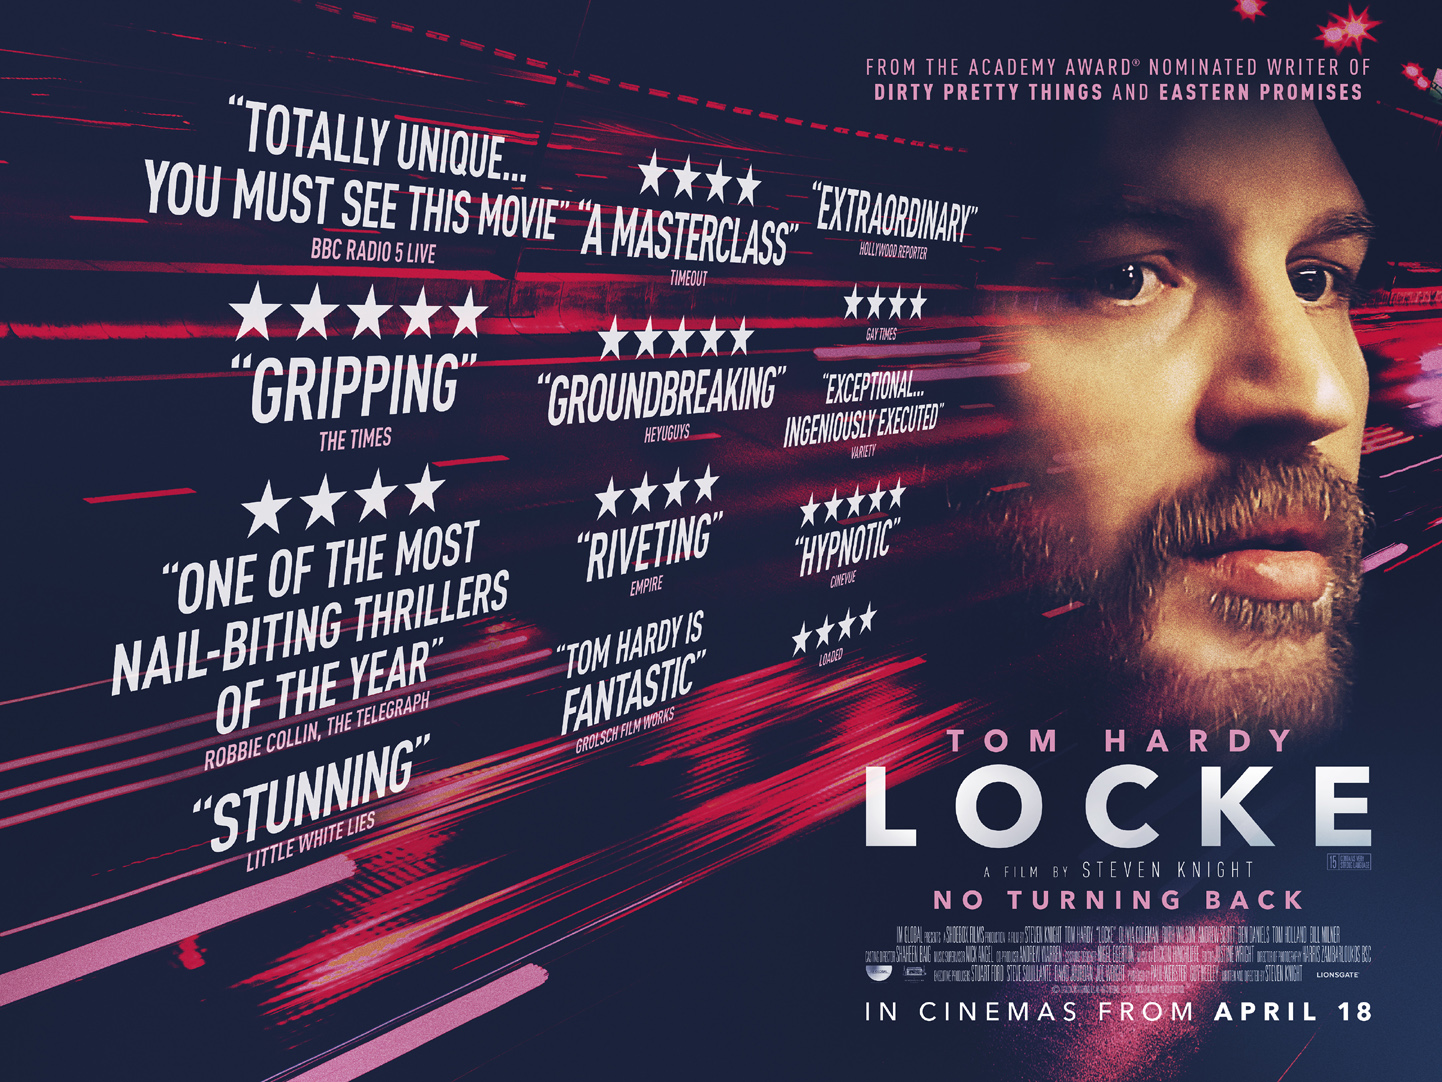 Hollywood star Tom Hardy plays a Birmingham construction foreman in new film Locke